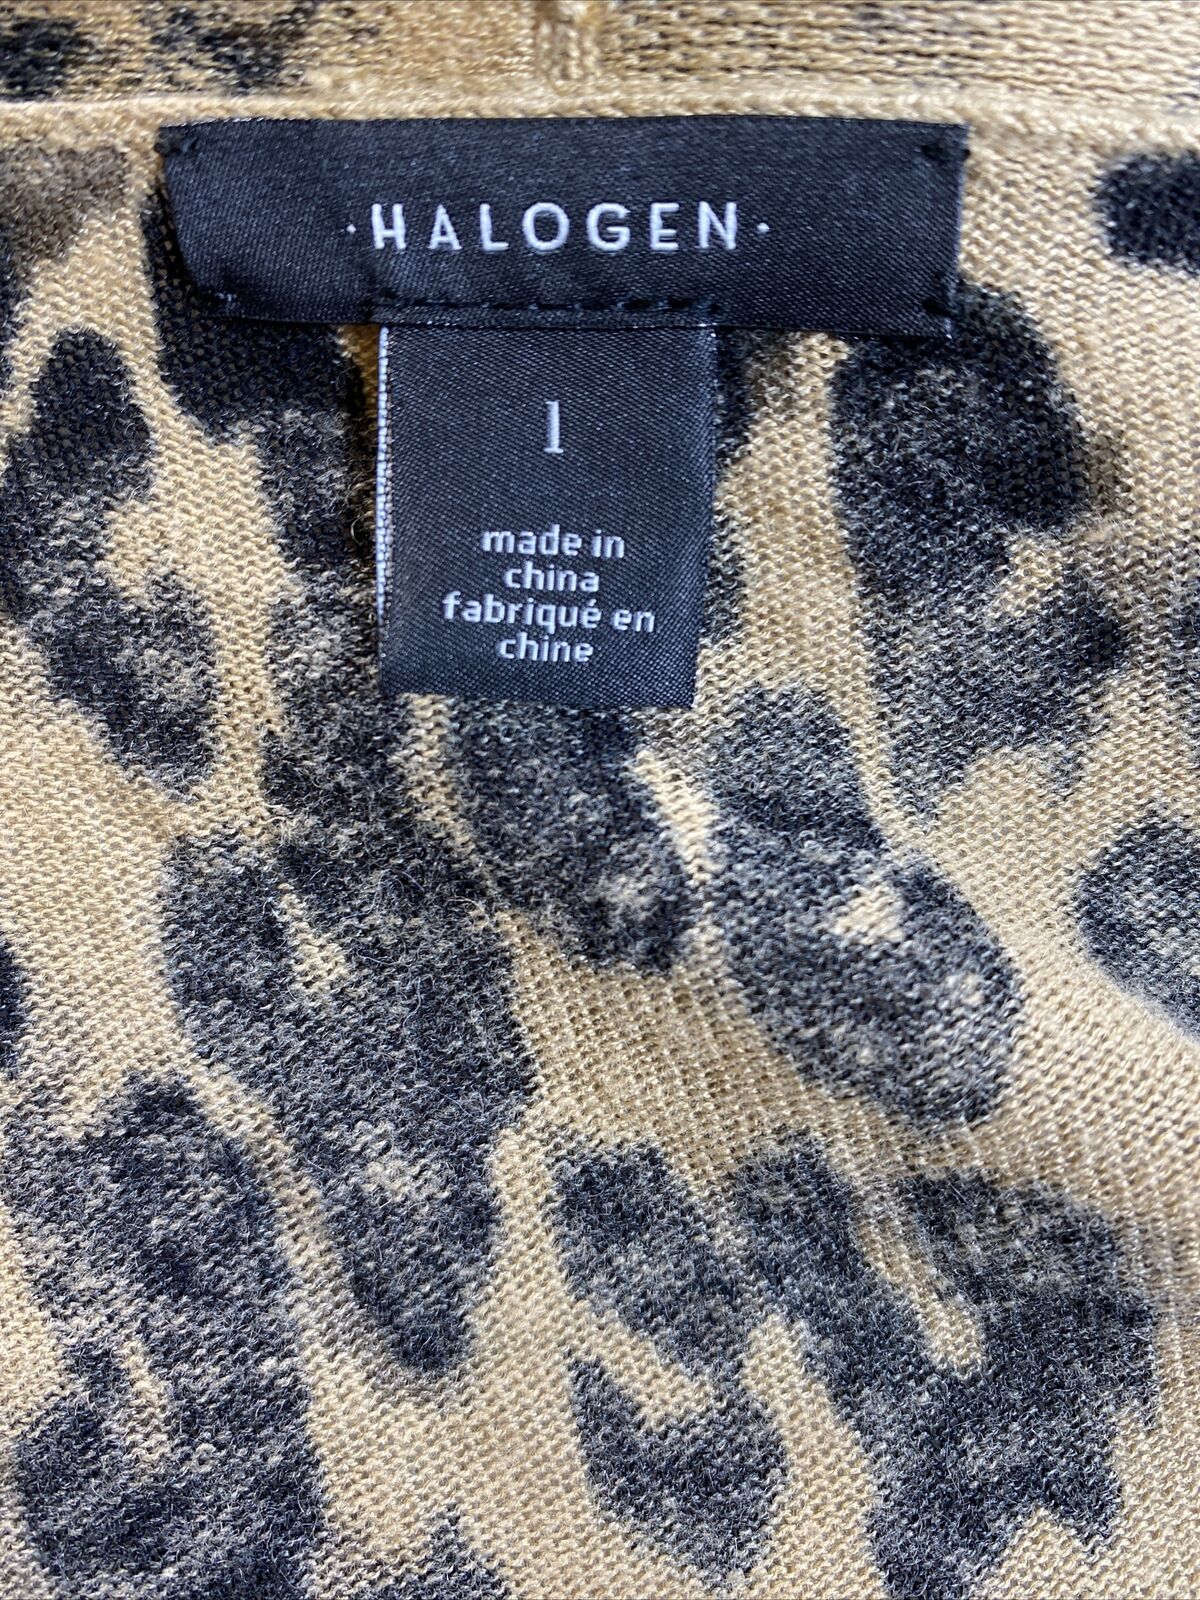 Halogen Suéter tipo cárdigan abierto largo con estampado animal marrón/negro para mujer - 1